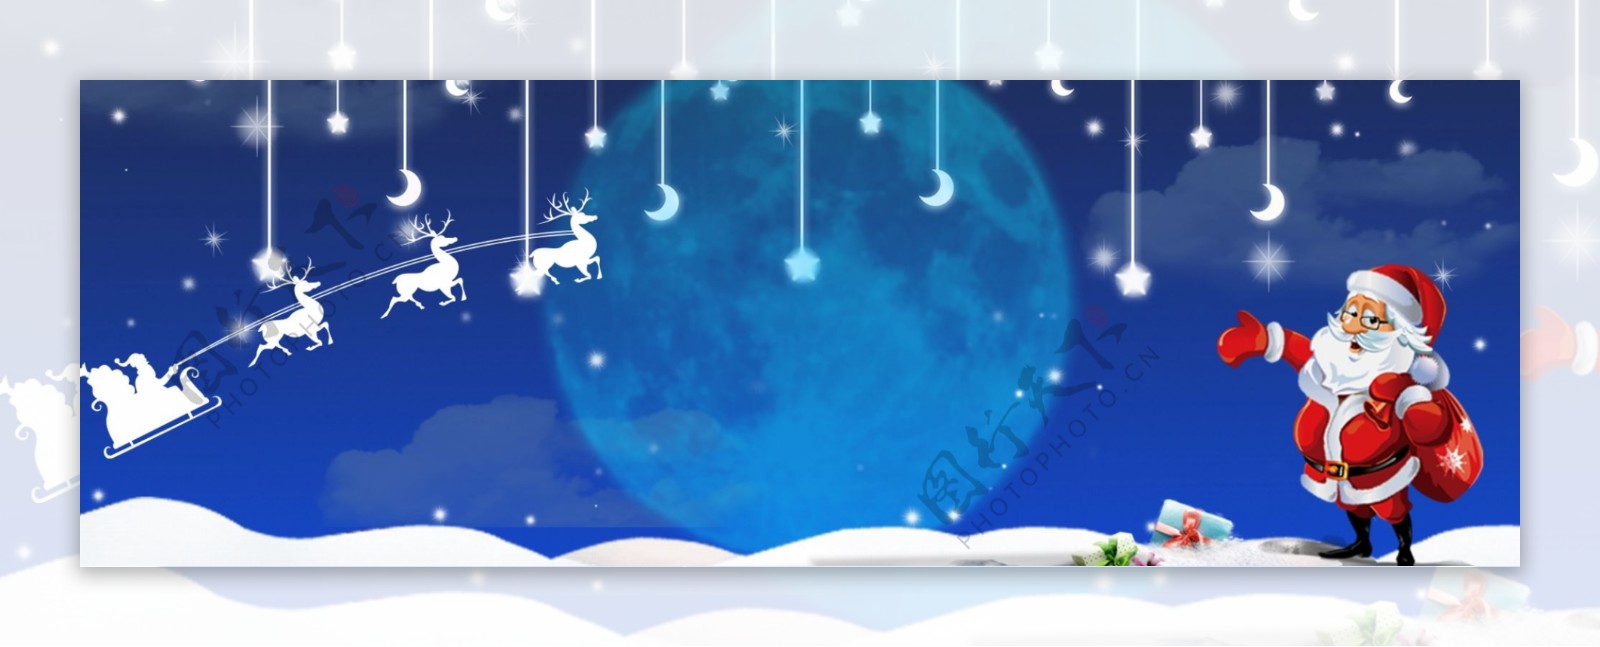 雪景夜晚圣诞节卡通banner背景